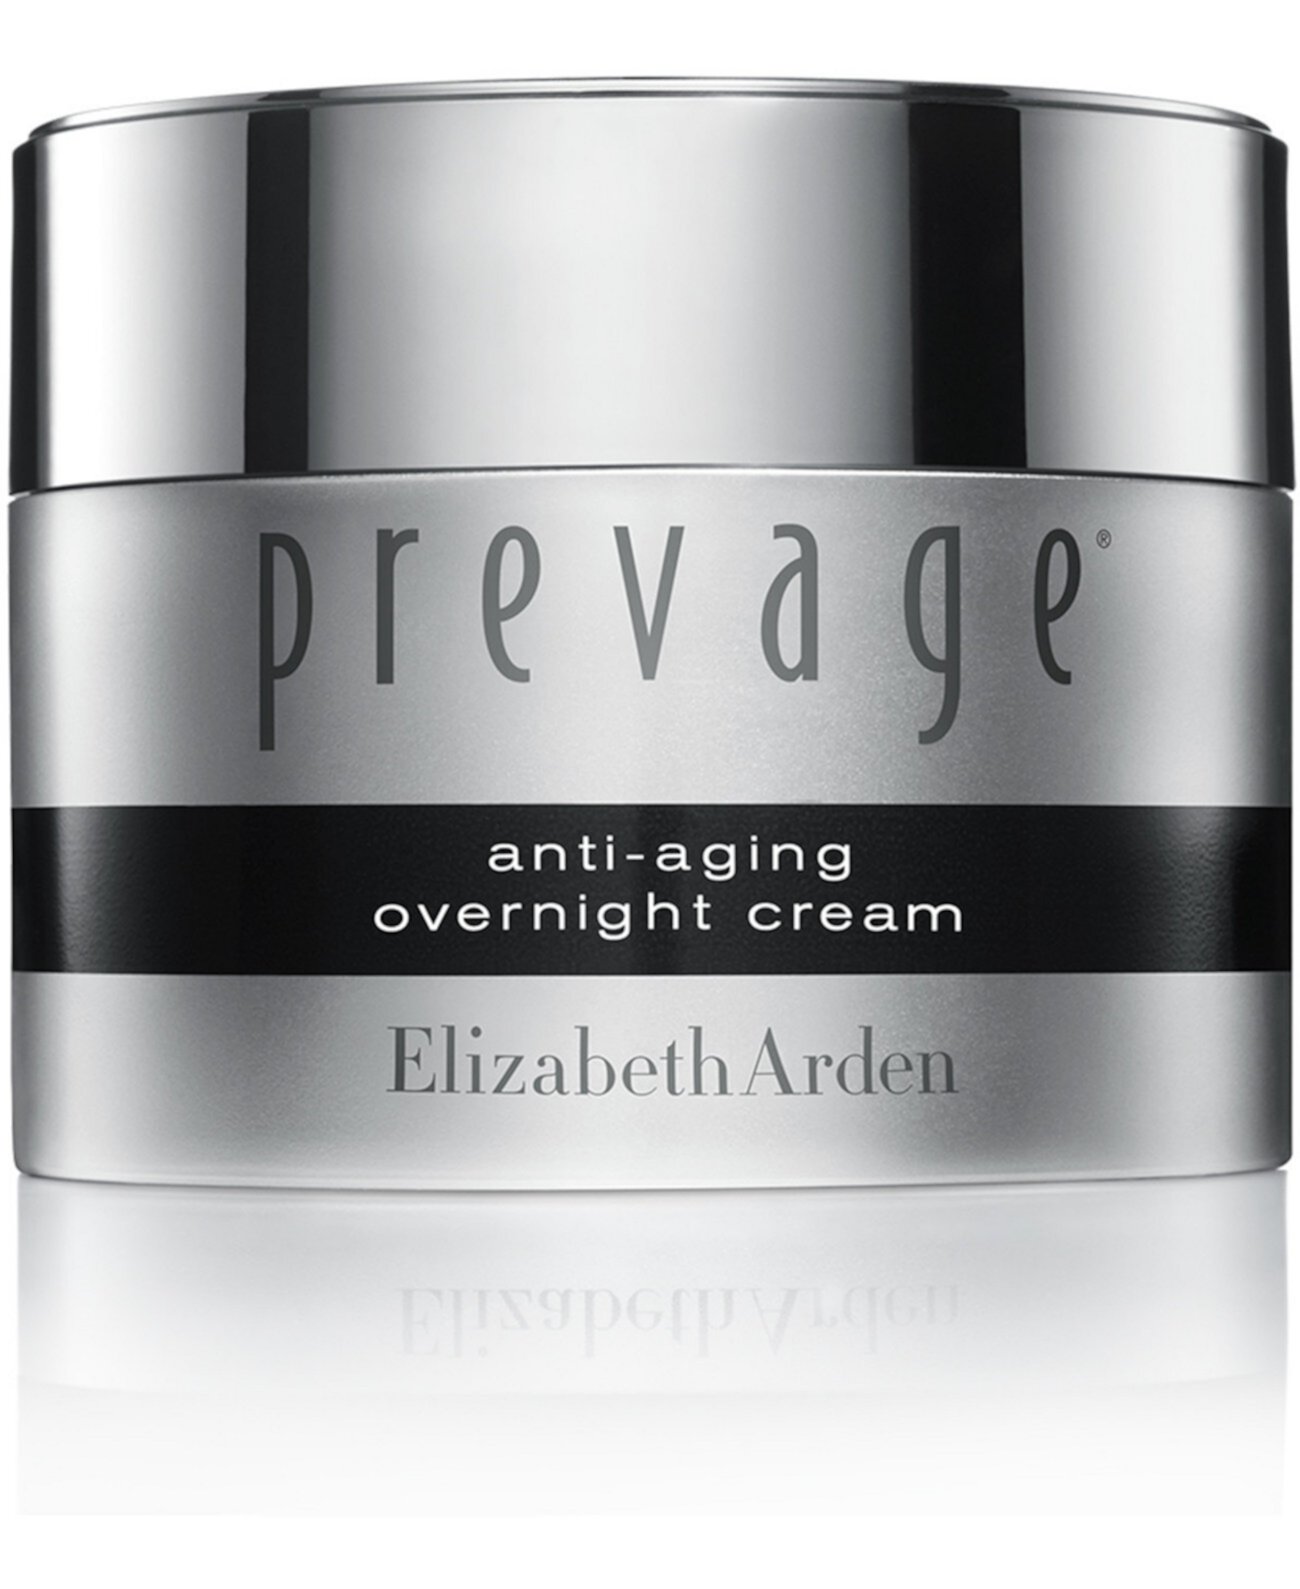 Prevage® Антивозрастной ночной крем, 1,7 унции. Elizabeth Arden